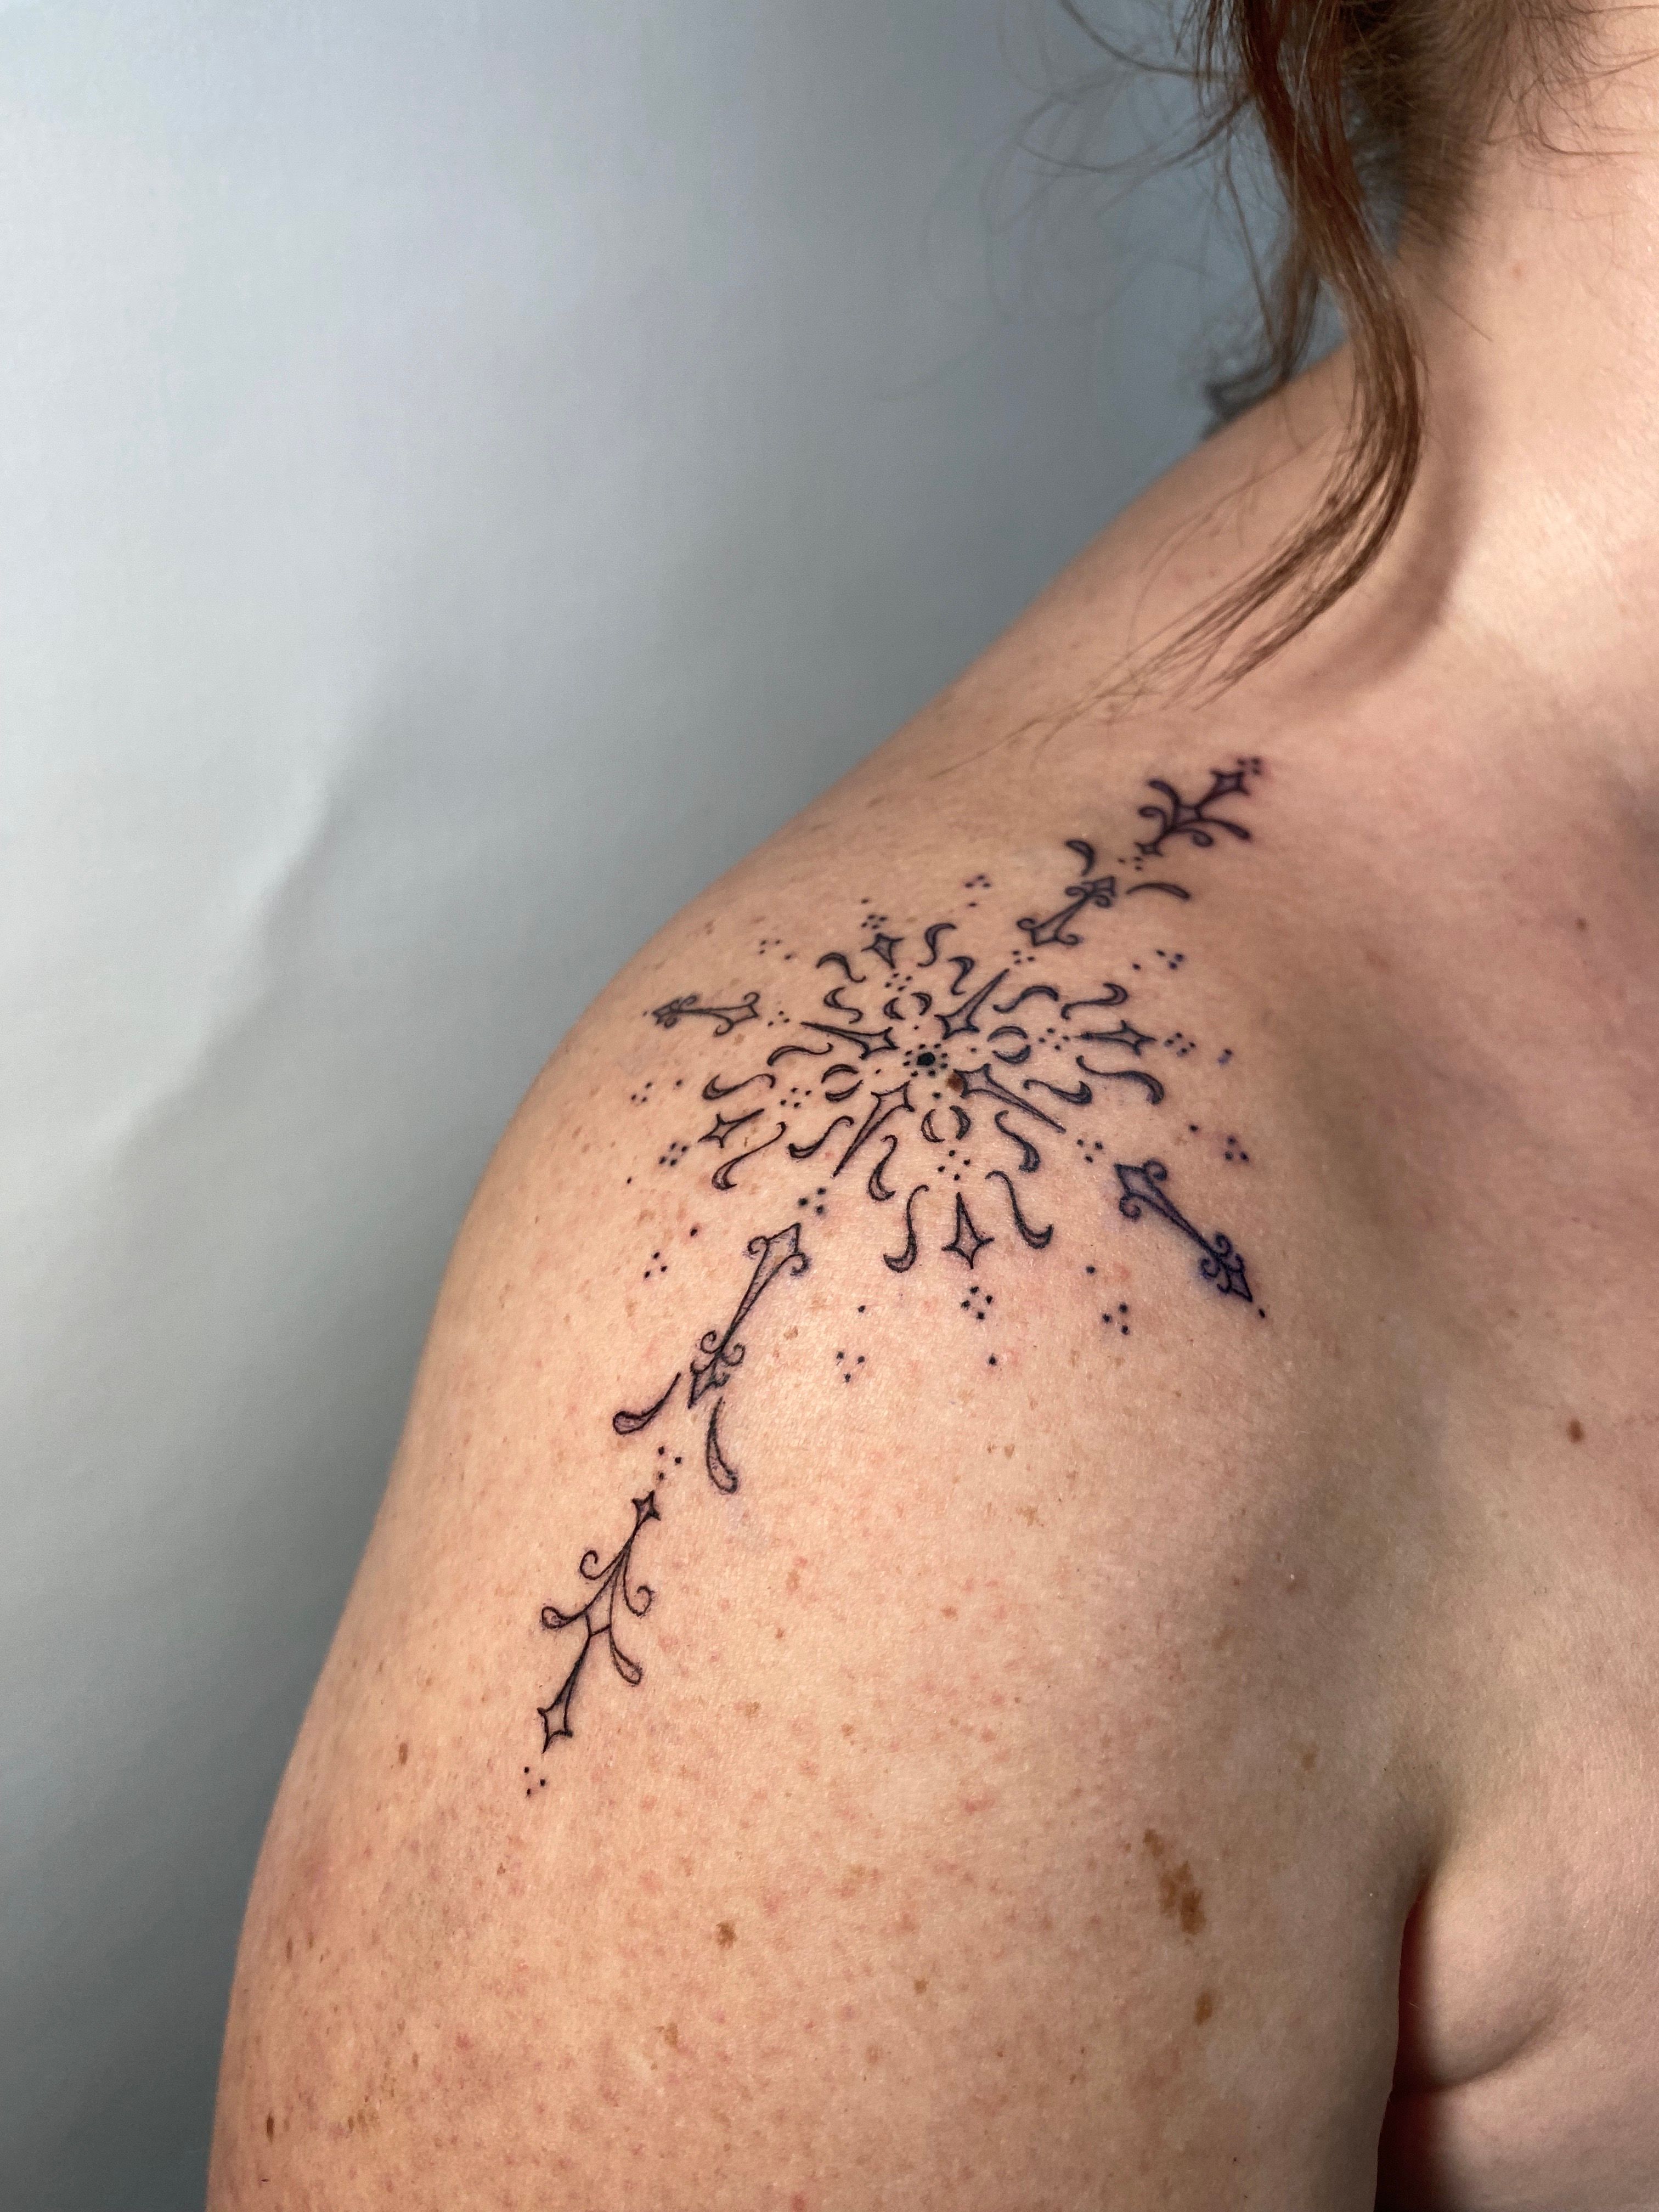 Shoulder Tattoo | Cool tattoos, Beautiful tattoos, Tattoos